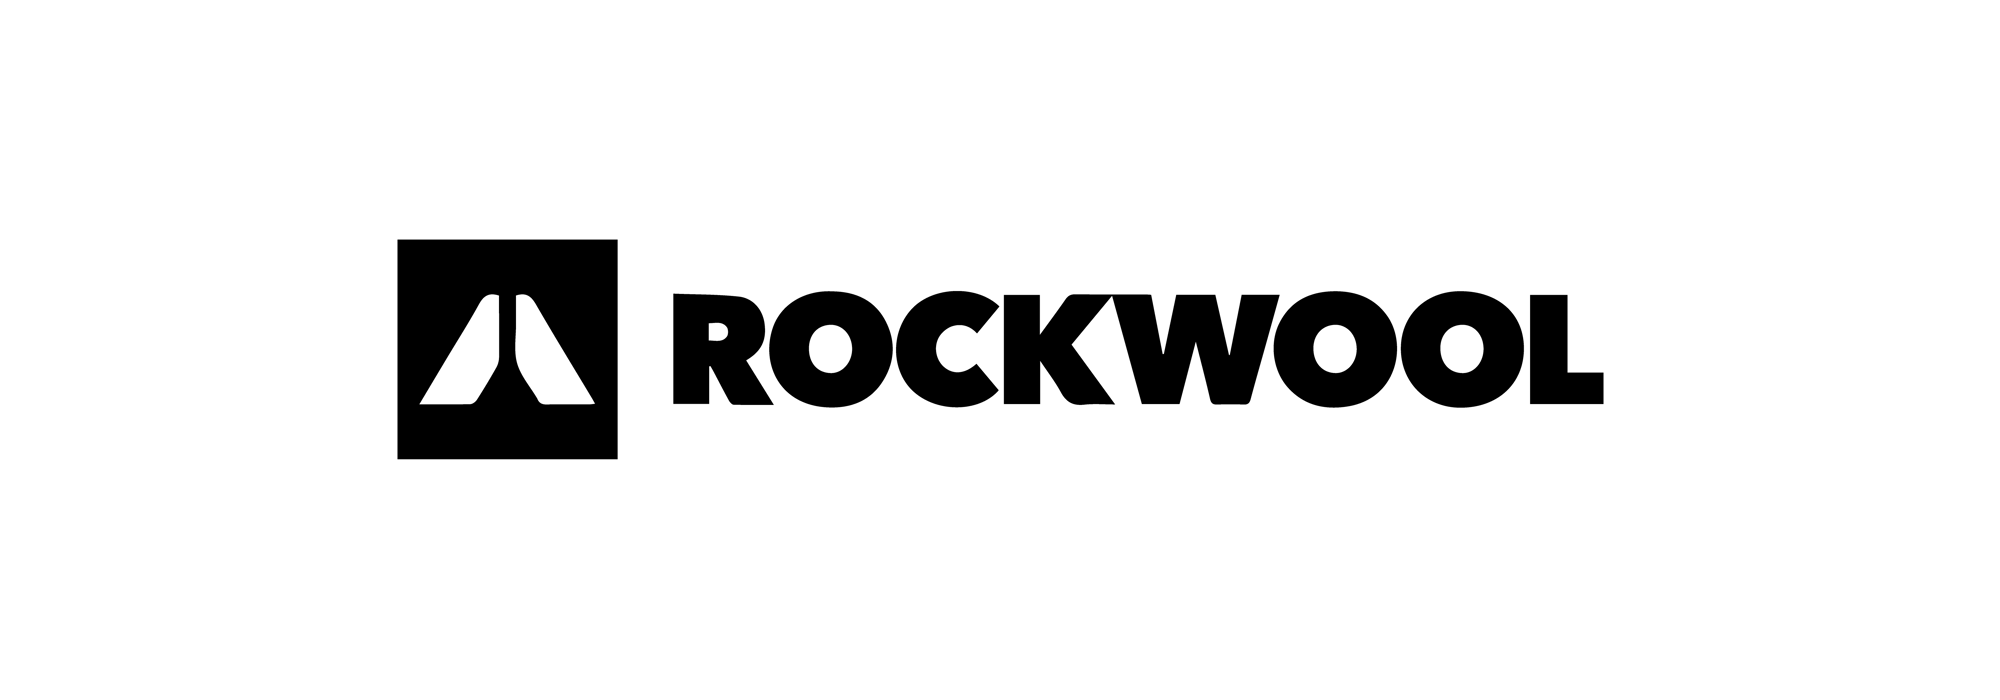 rockwool_black-01